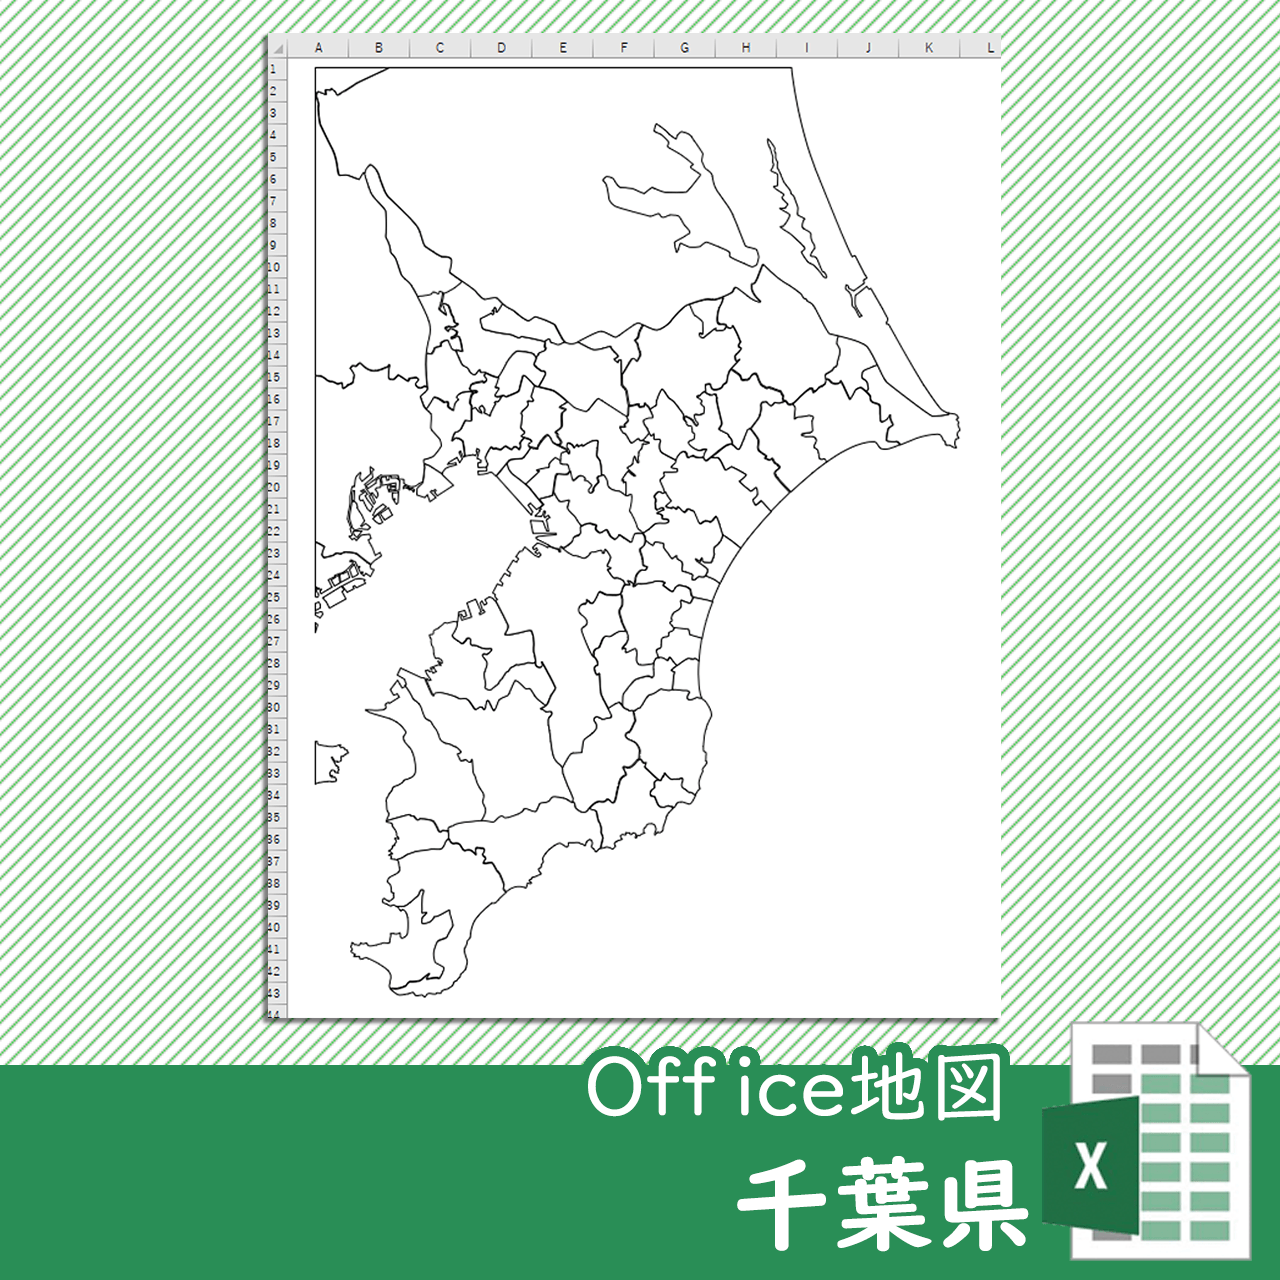 千葉県のOffice地図のサムネイル